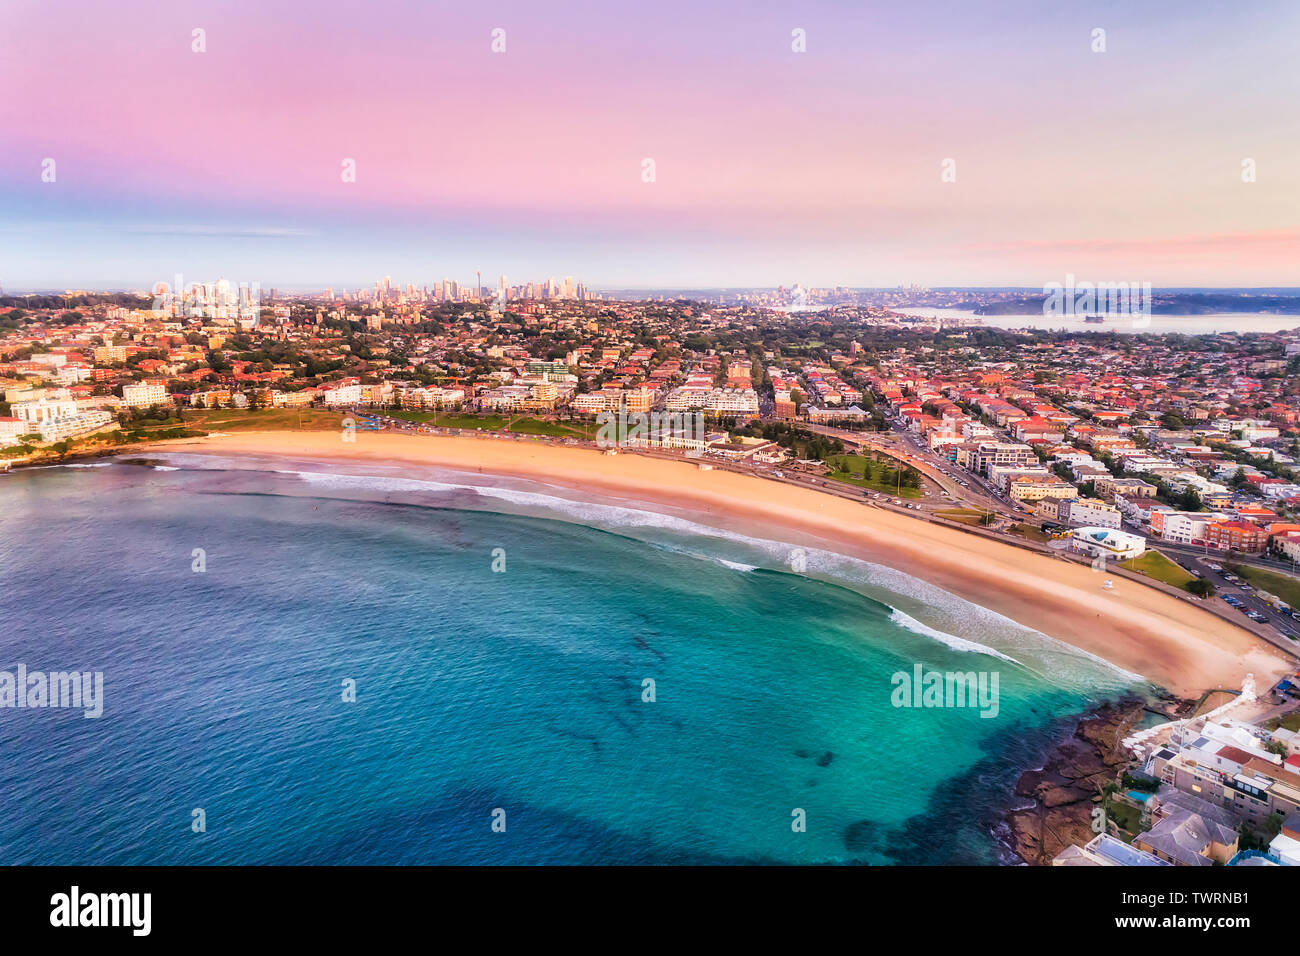 Sauber Bogen der breiten Sandstrand Bondi Beach in Sydney bei Sonnenaufgang mit rosa Himmel und ruhige glatte Wellen schwebenden Surfer und durch die östlichen Vororte umgeben. Stockfoto